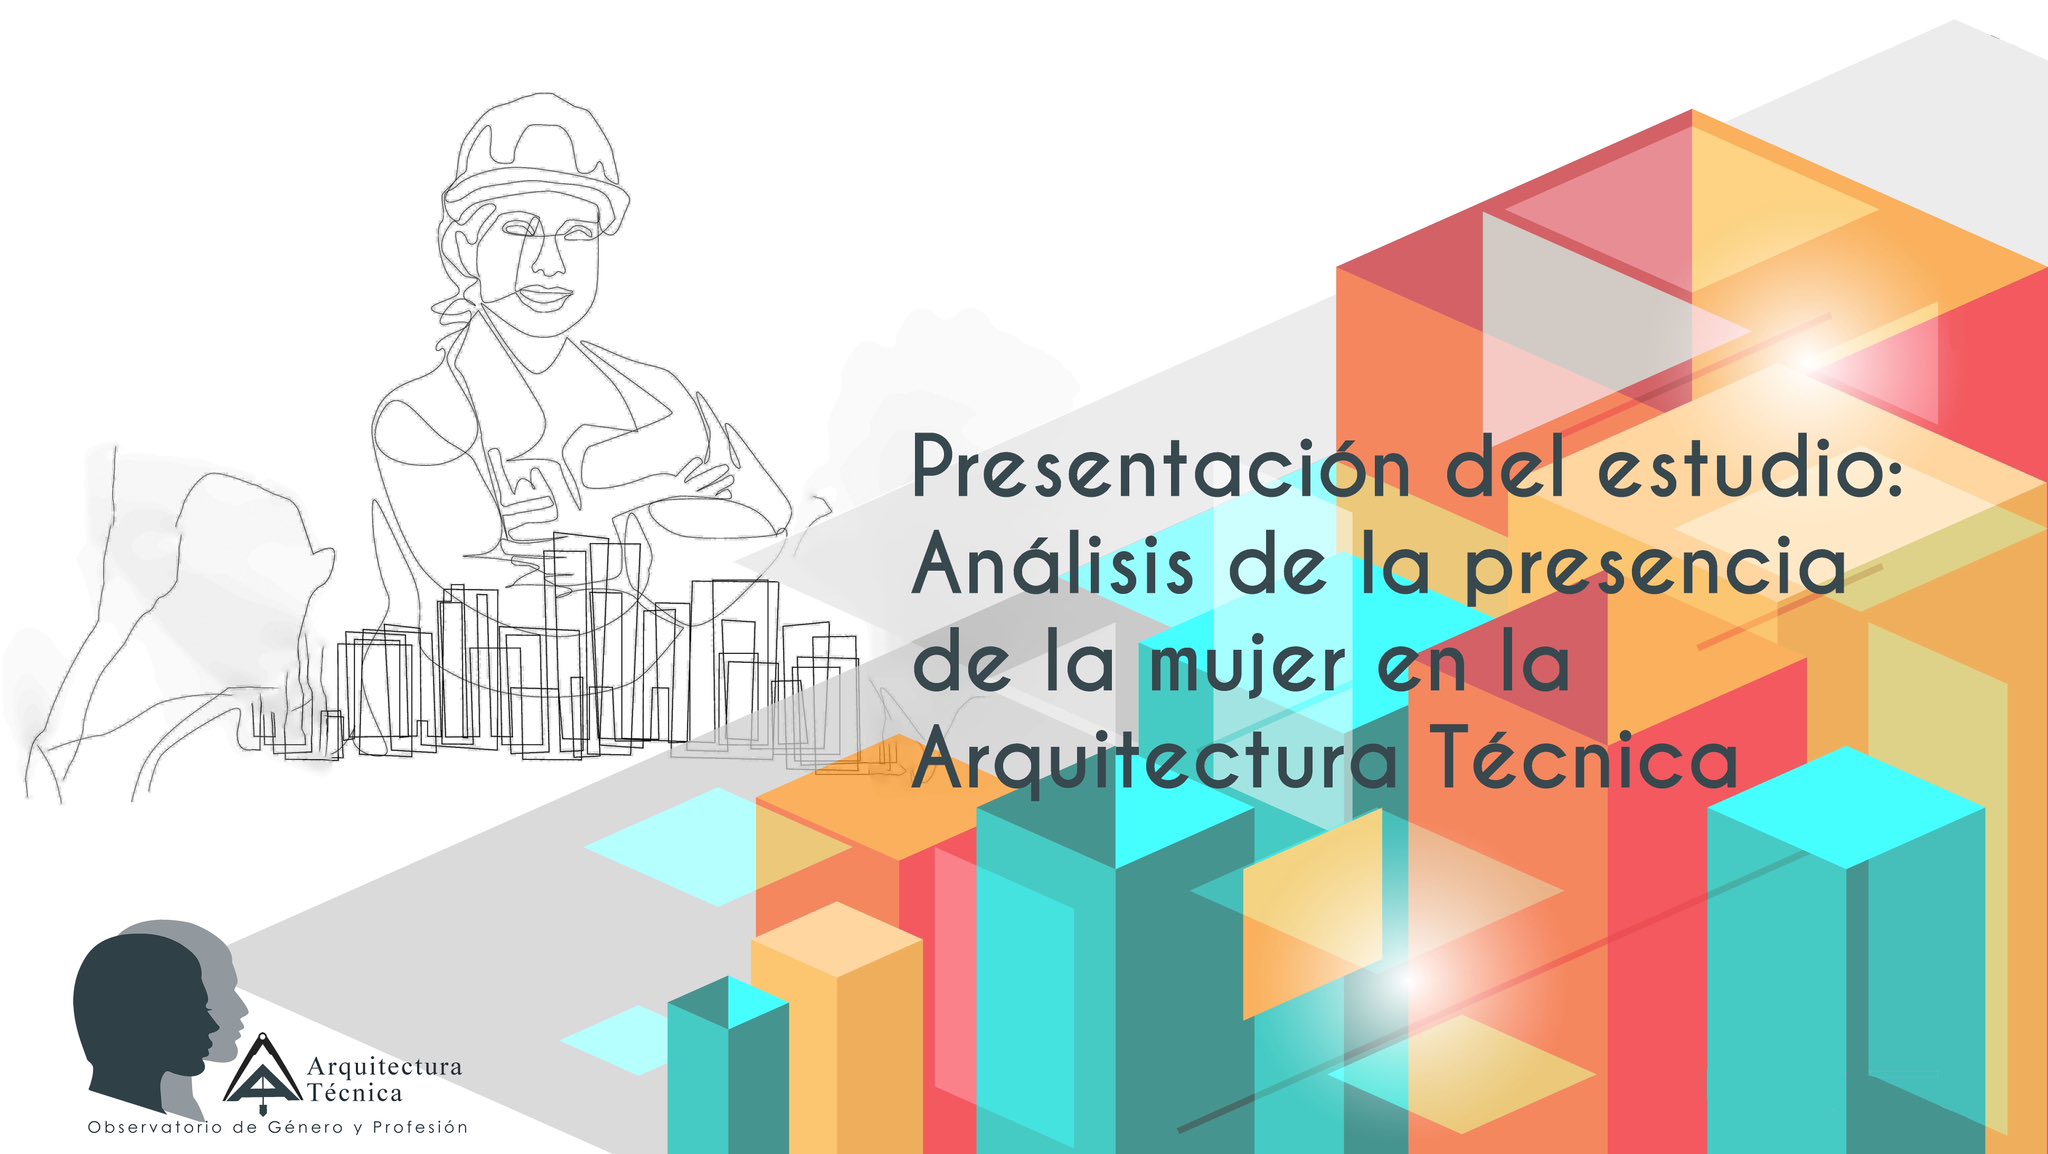 Presentación del estudio - Análisis de la presencia de la mujer en la Arquitectura Técnica